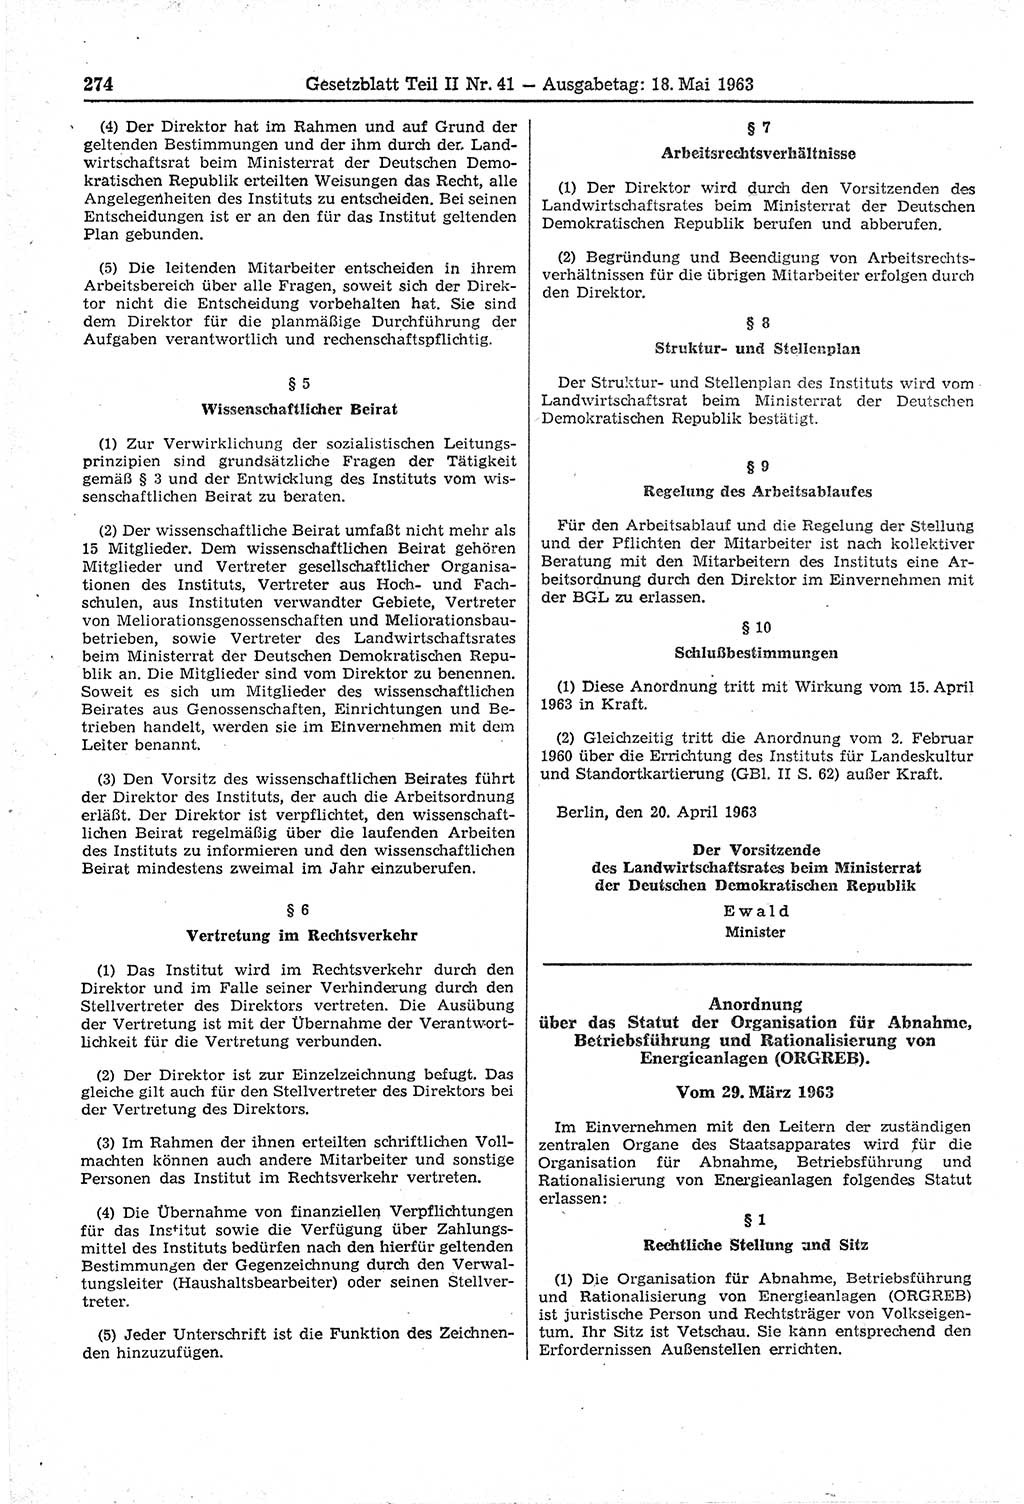 Gesetzblatt (GBl.) der Deutschen Demokratischen Republik (DDR) Teil ⅠⅠ 1963, Seite 274 (GBl. DDR ⅠⅠ 1963, S. 274)